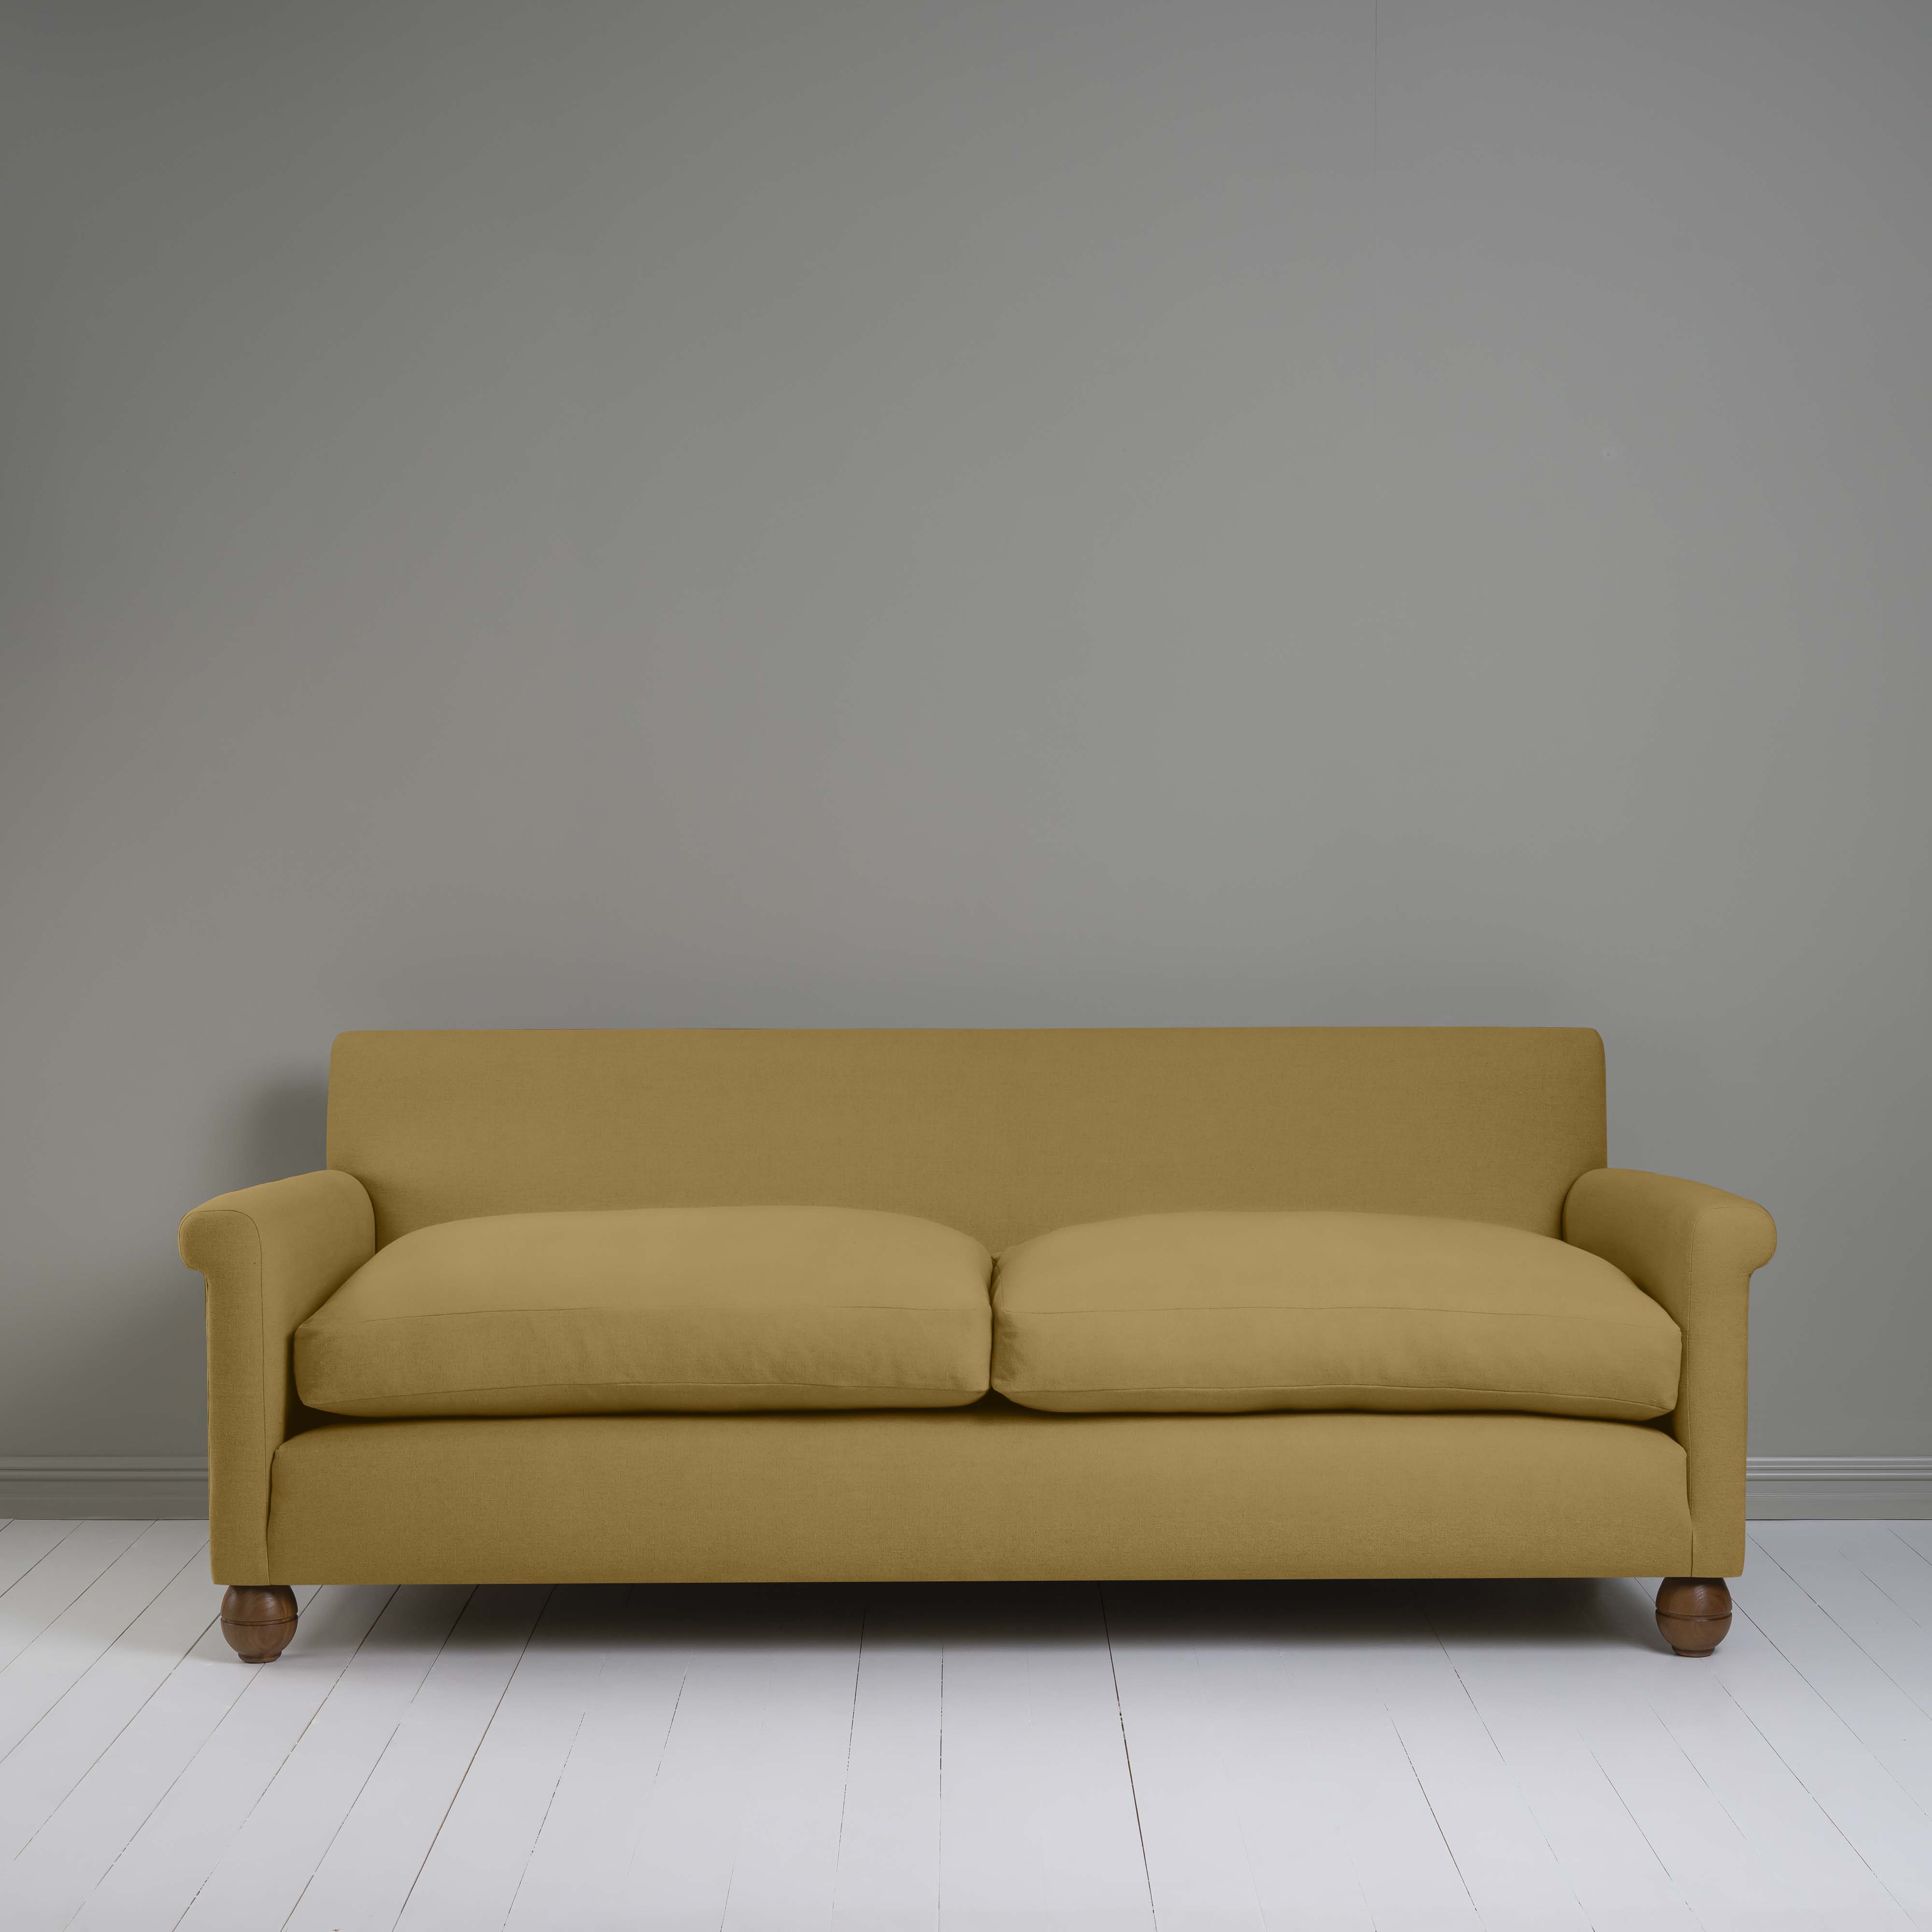  Idler 4 seater sofa in Laidback Linen Ochre 